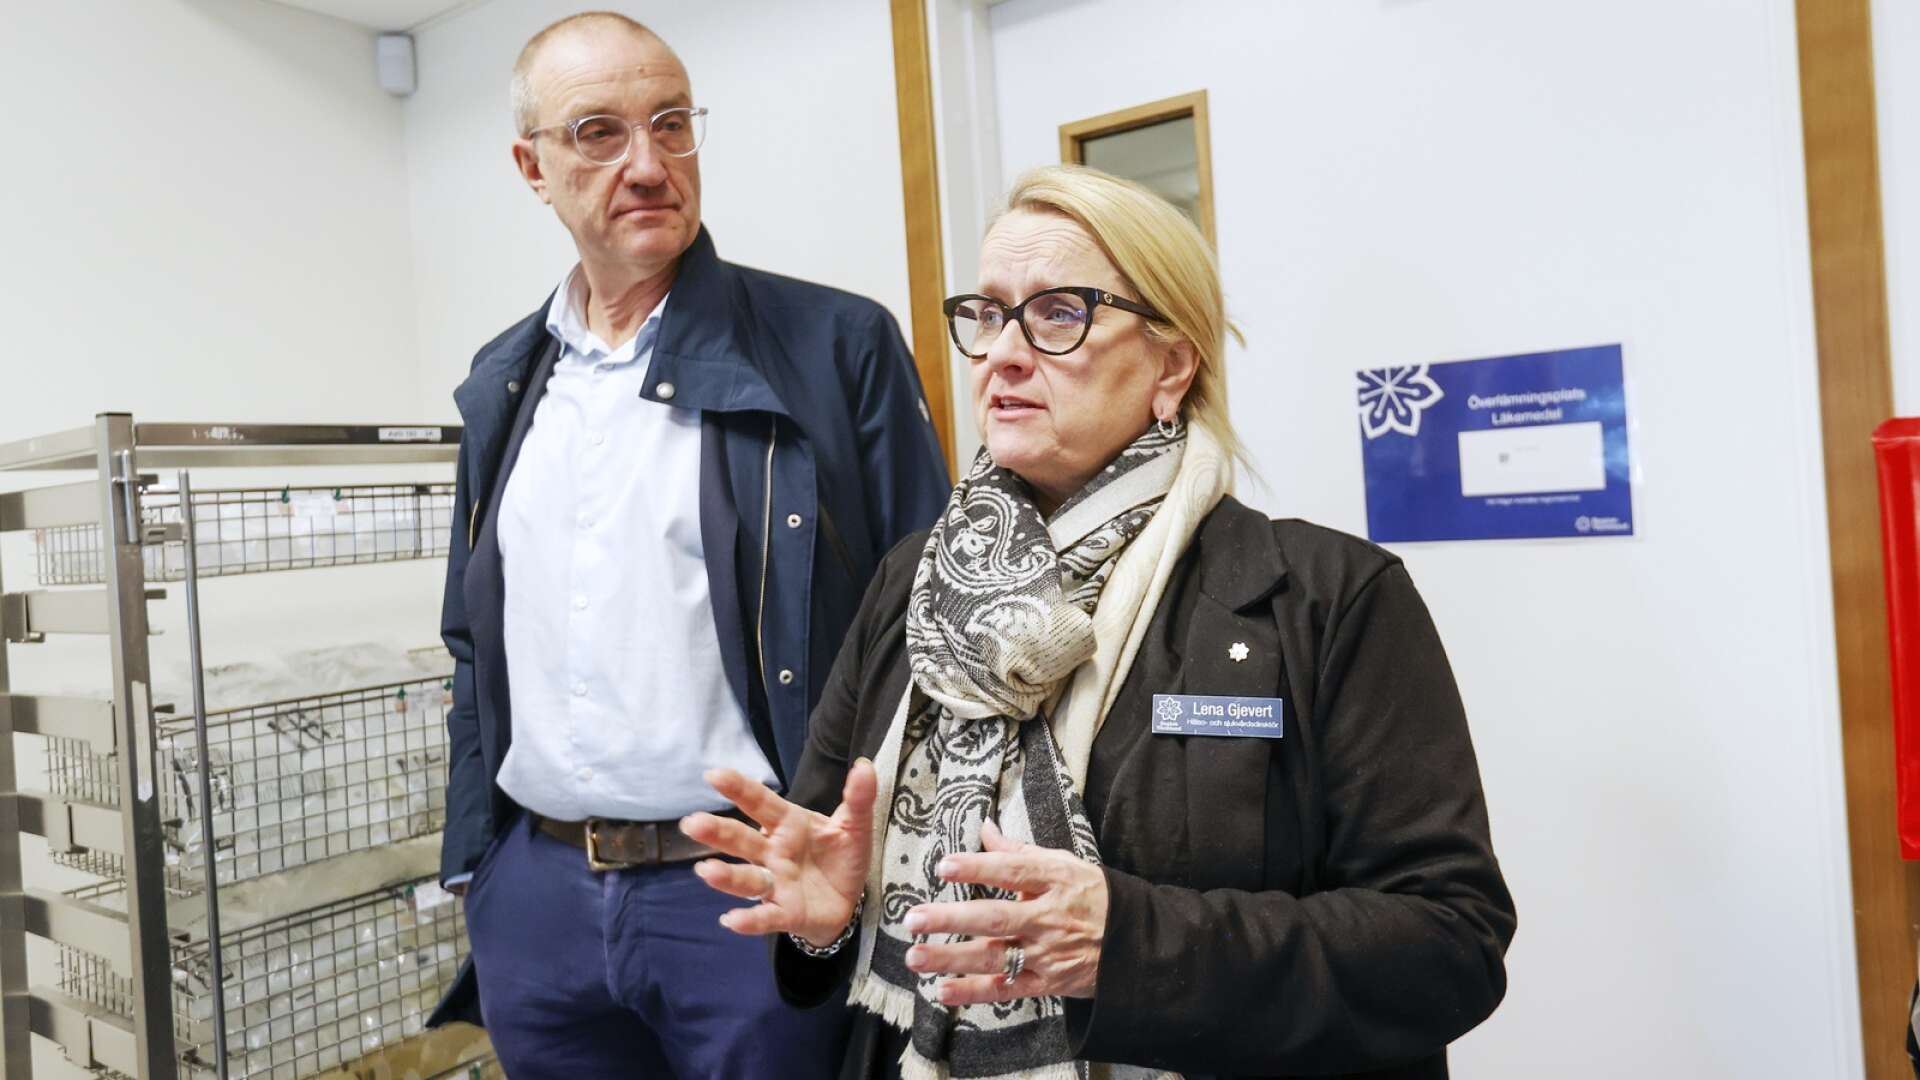 Region Värmlands sätt att sätta chefers löner leder till löneinflation och är inget annat än ett systemfel, anser insändarskribenten. På bilden syns Peter Bäckstrand, regiondirektör, och Lena Gjevert, hälso- och sjukvårdsdirektör.